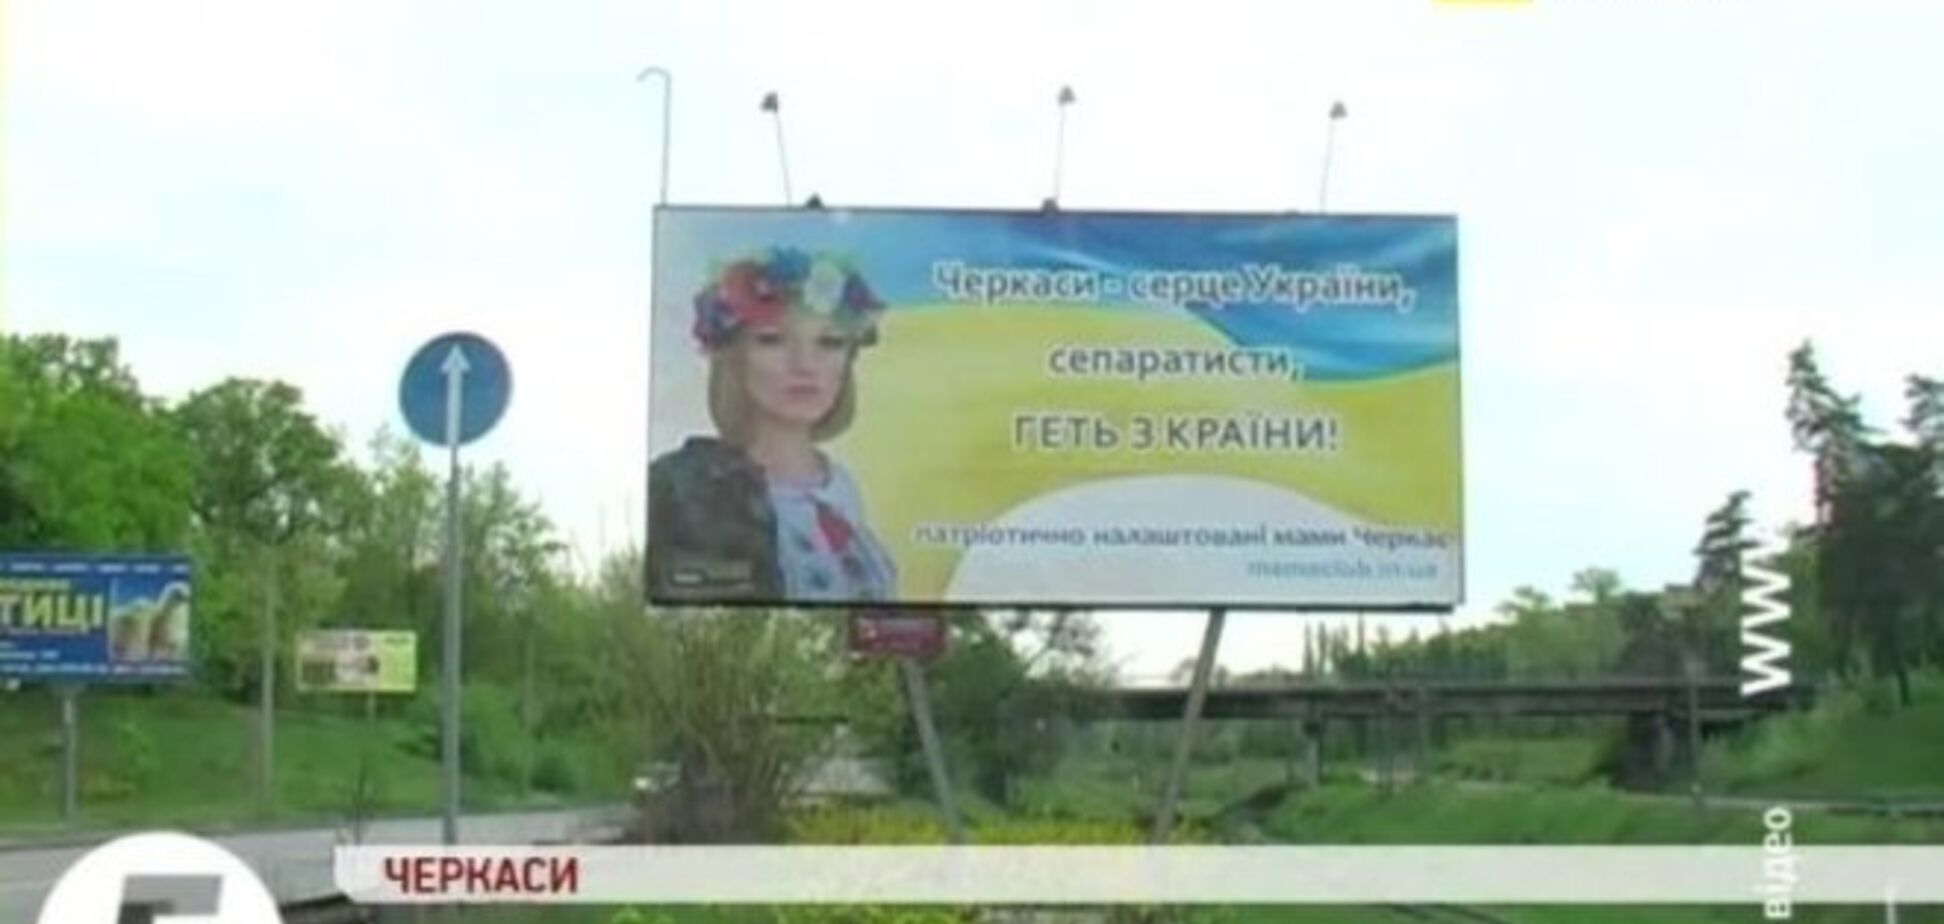 На въезде в Черкассы появился щит с антисепаратистким призывом